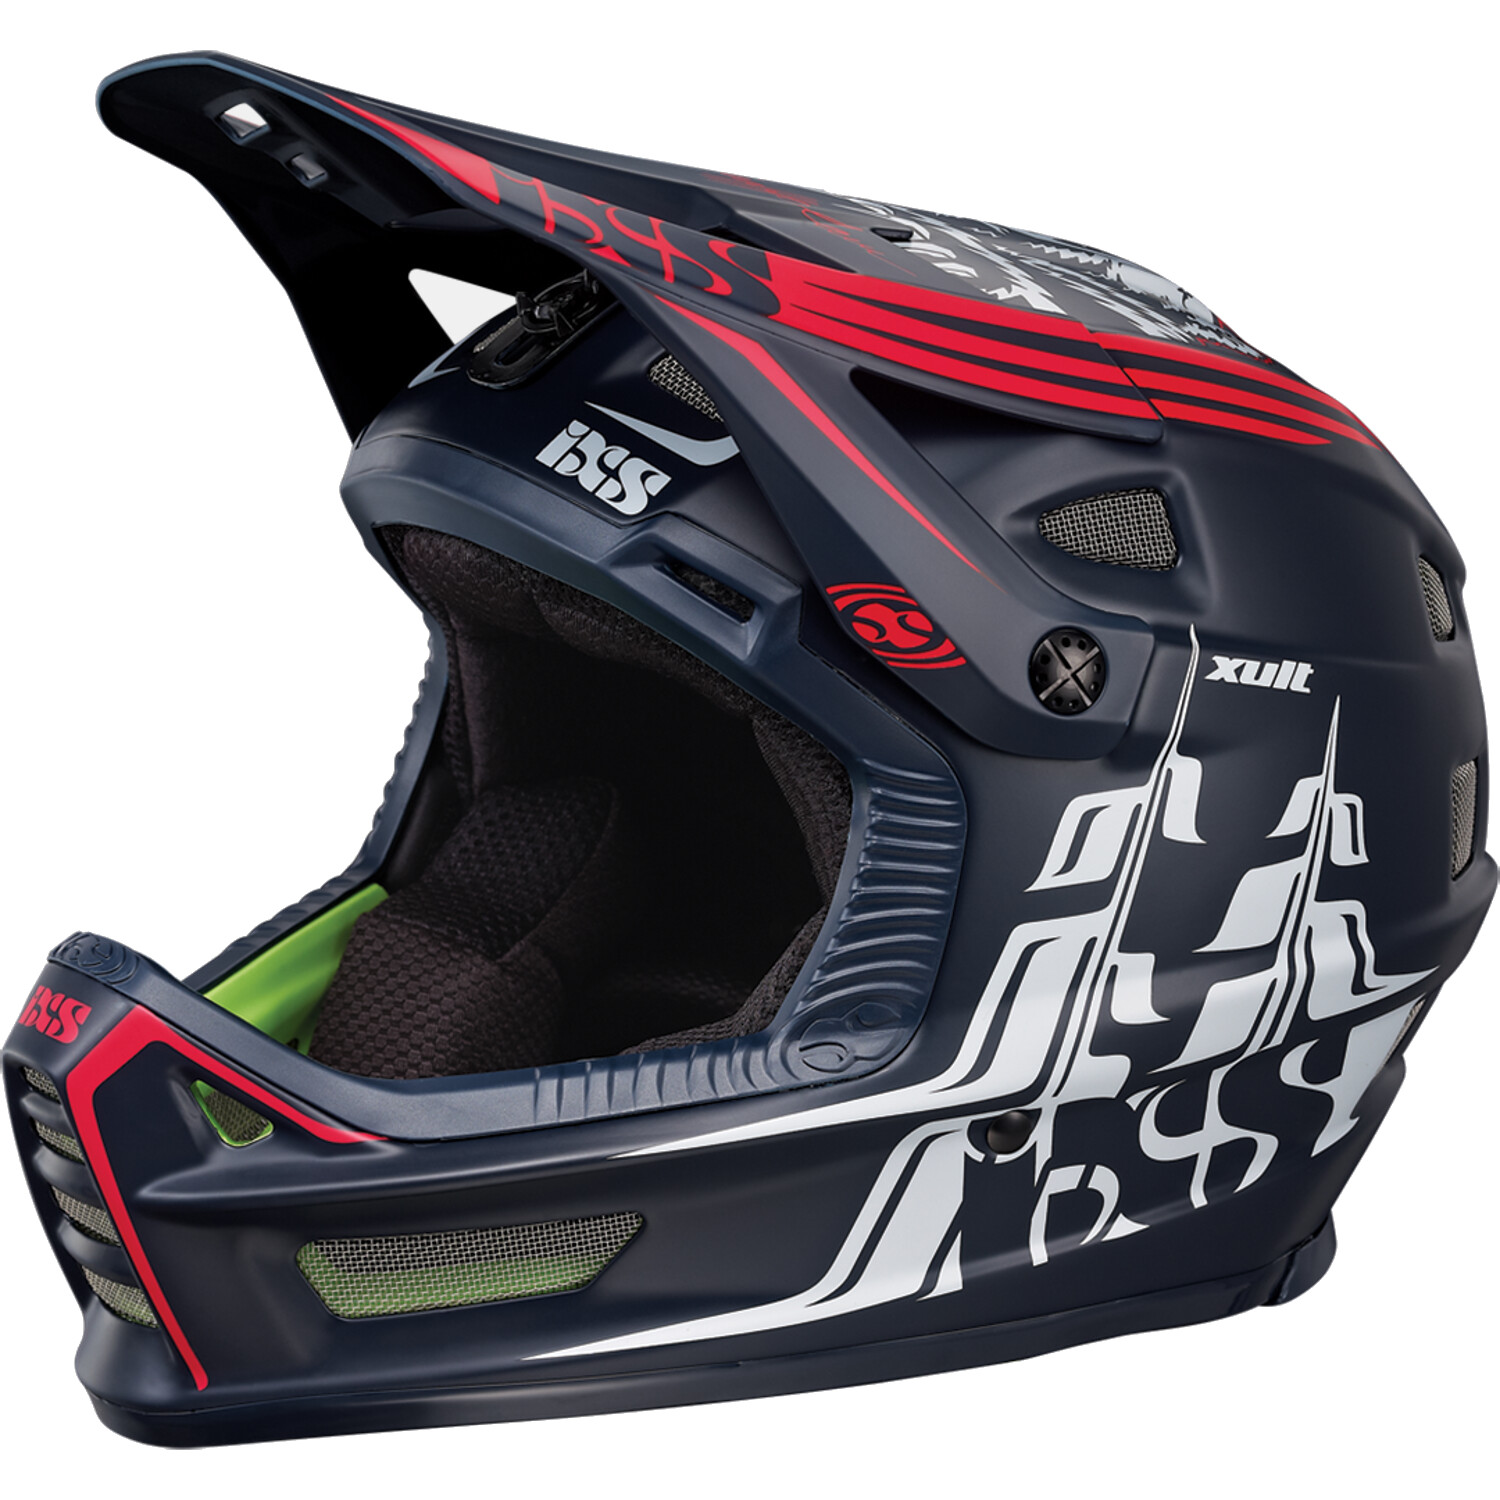 IXS Downhill MTB Helmet Xult Black/Red - Darren Berrecloth Edition